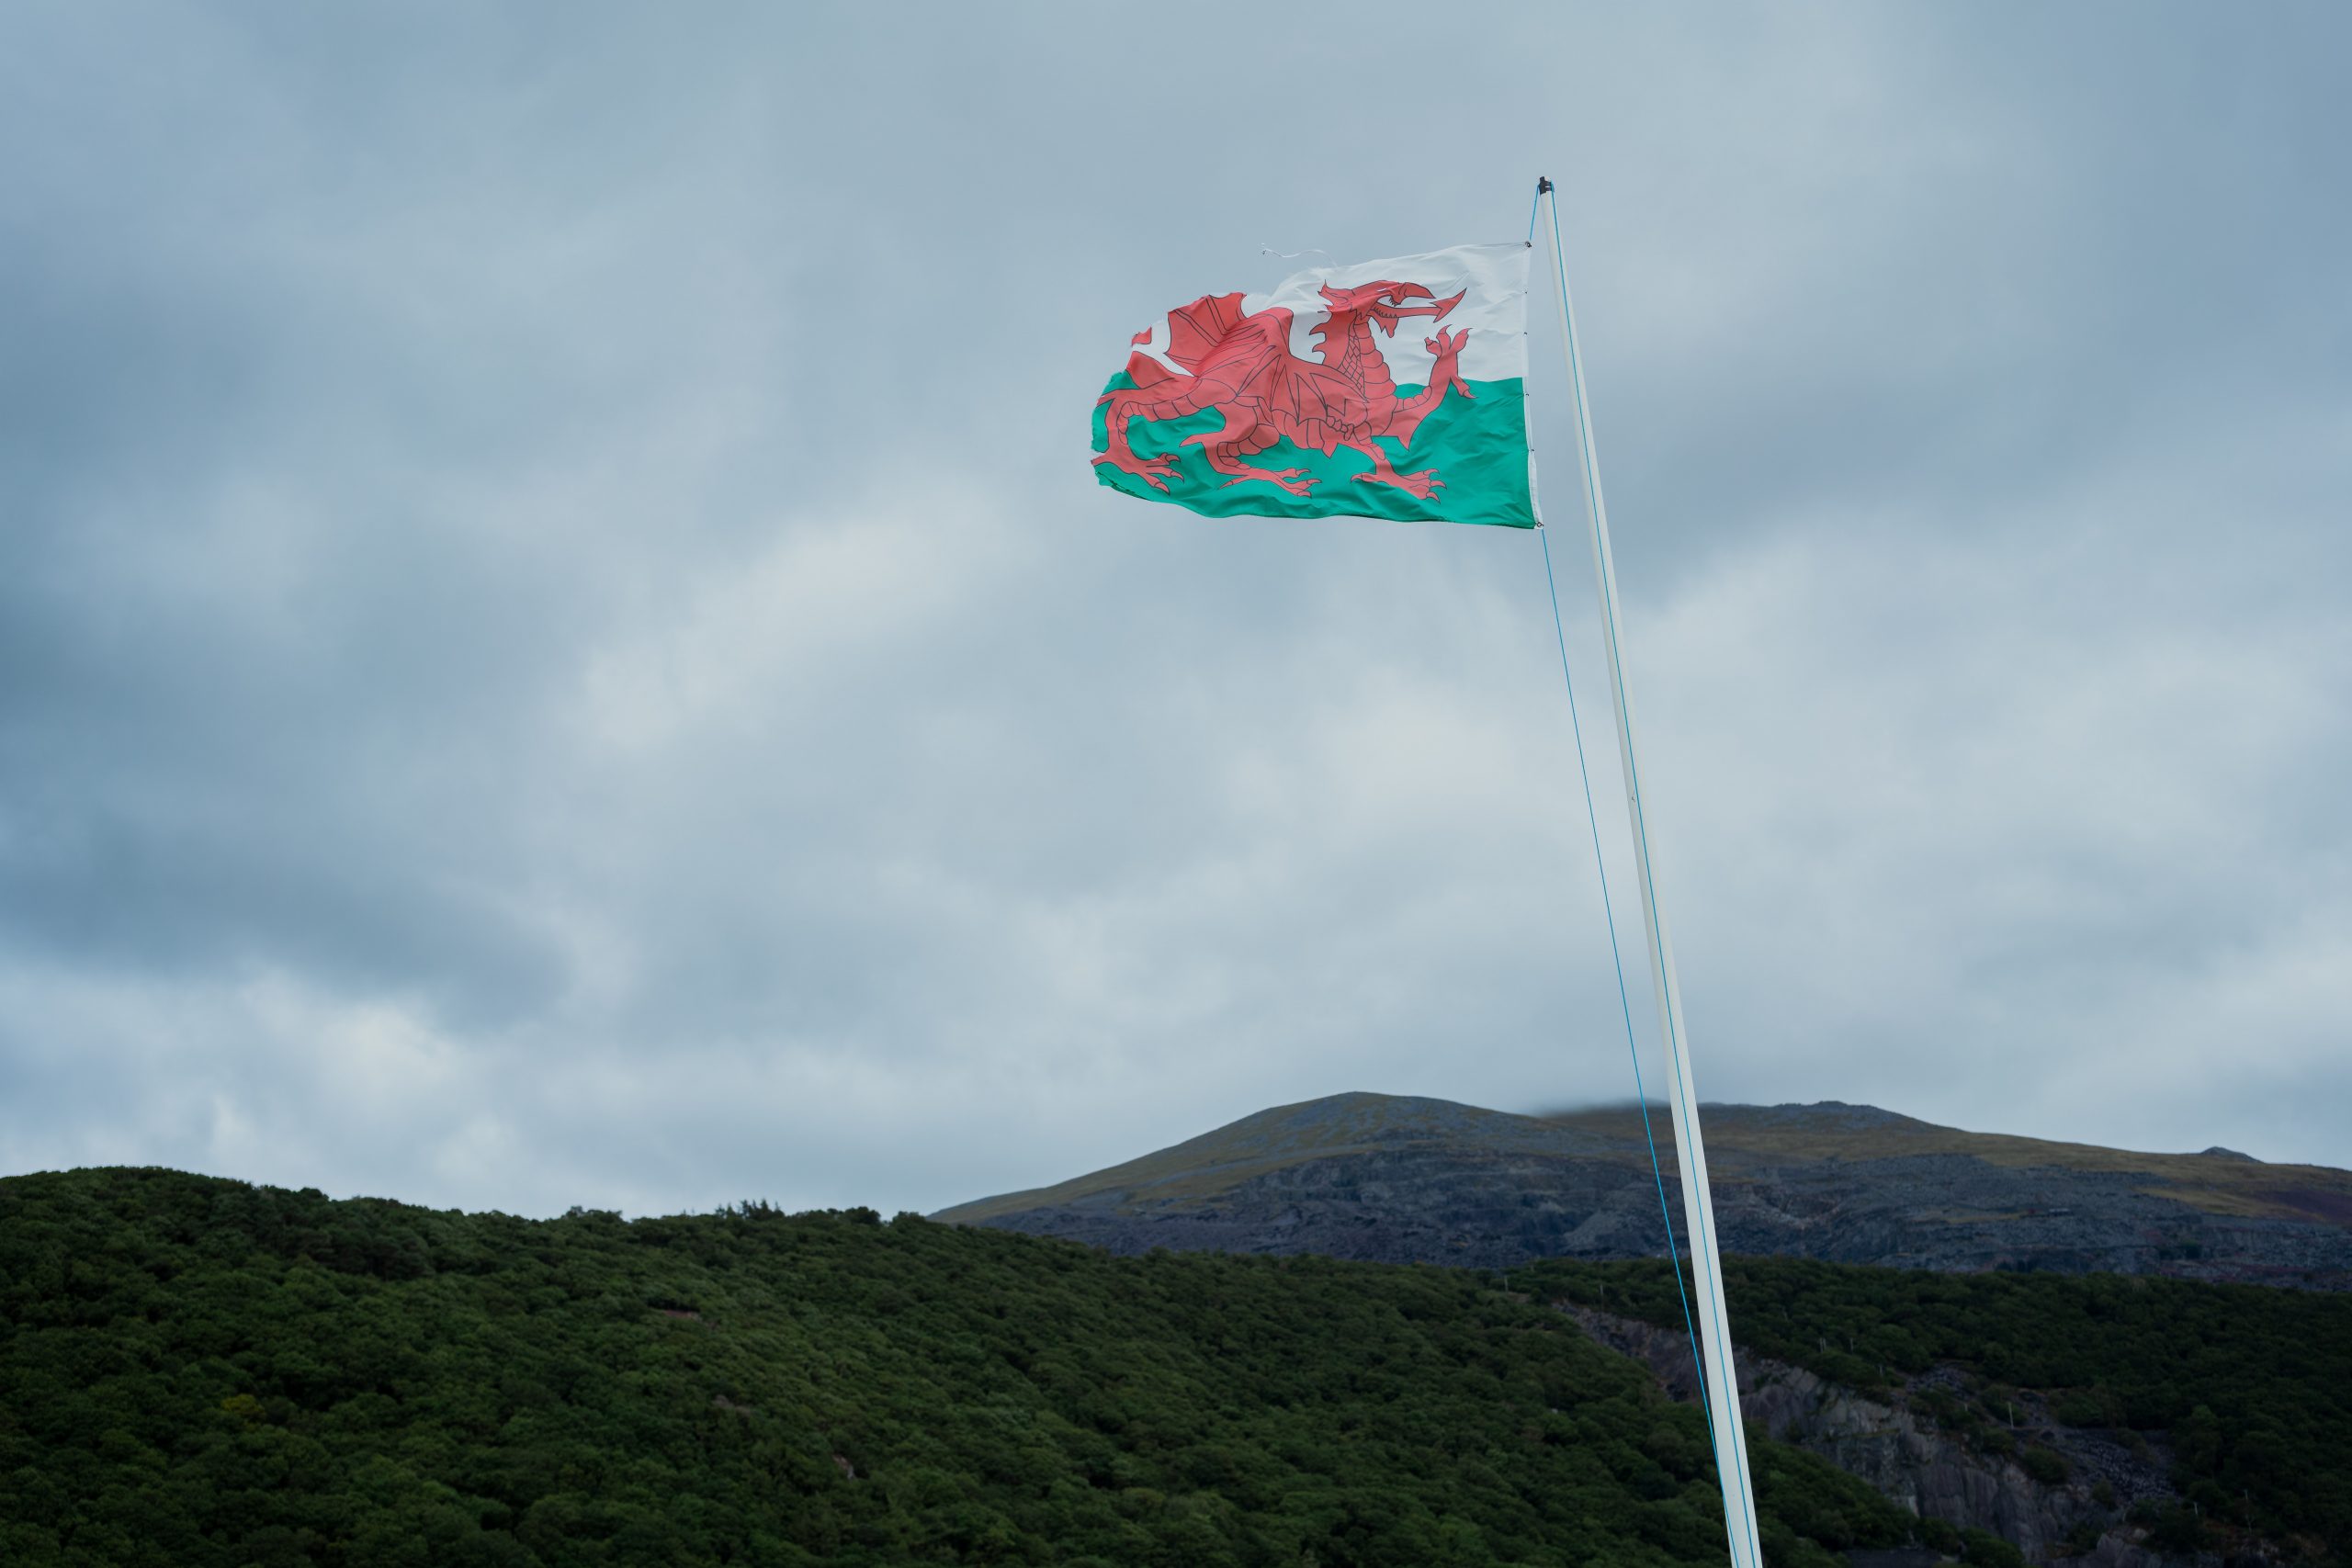 The Welsh flag under a gloomy sky